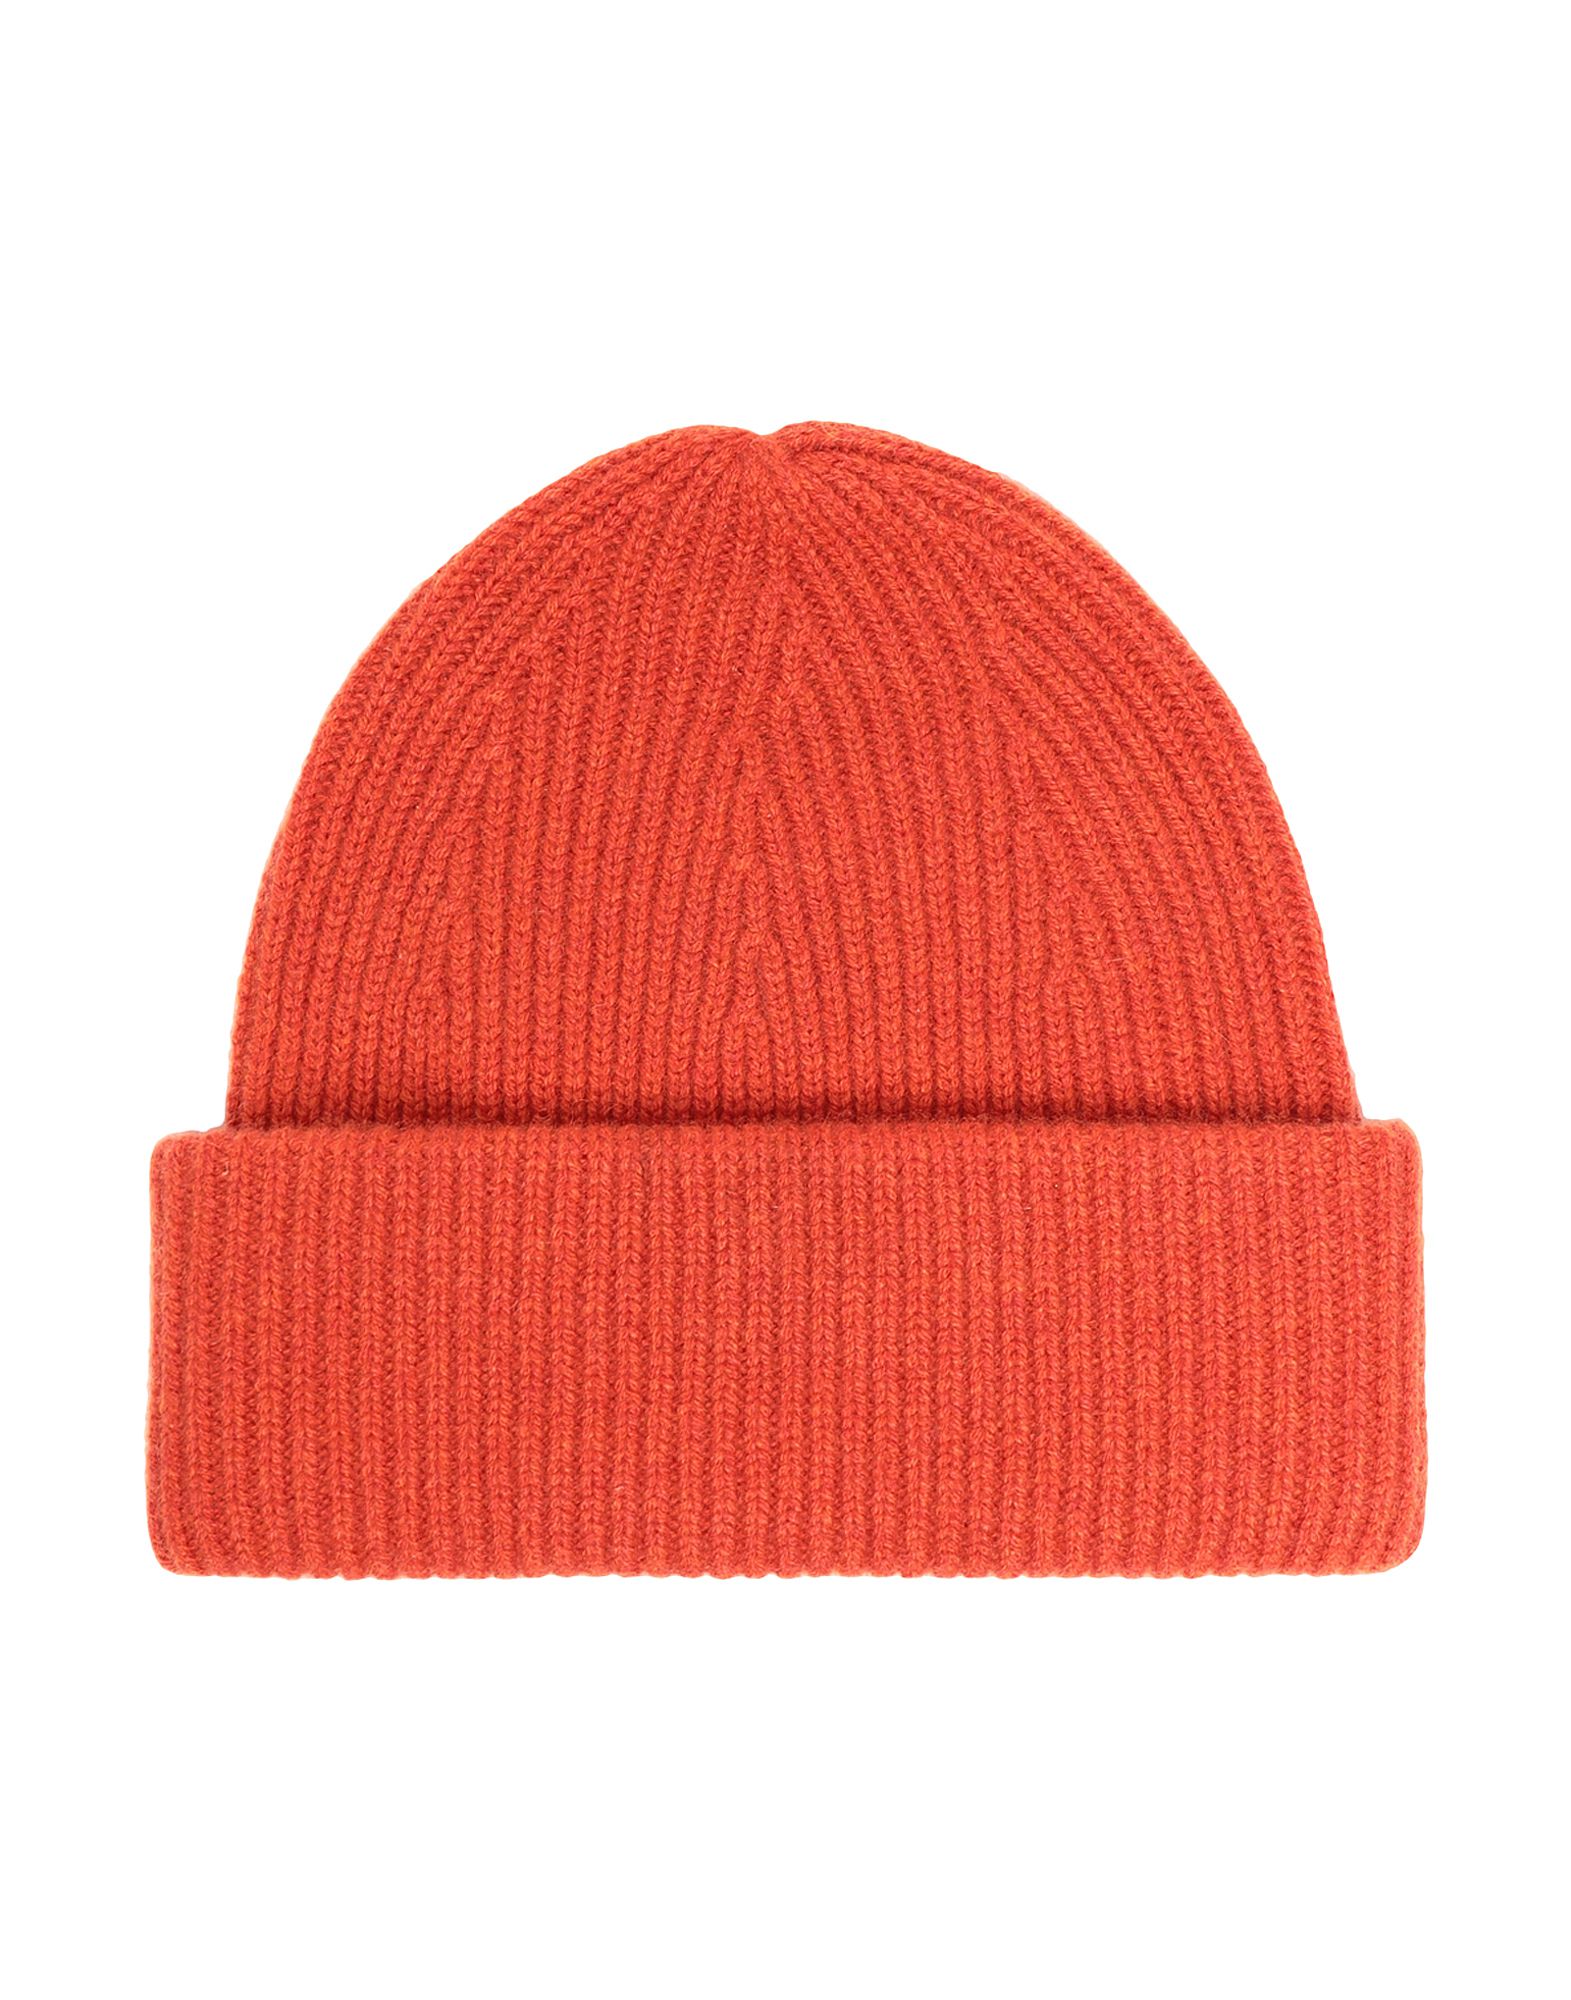 《セール開催中》8 by YOOX Unisex 帽子 赤茶色 one size カシミヤ 100% CACHEMIRE ESSENTIAL BEANIE